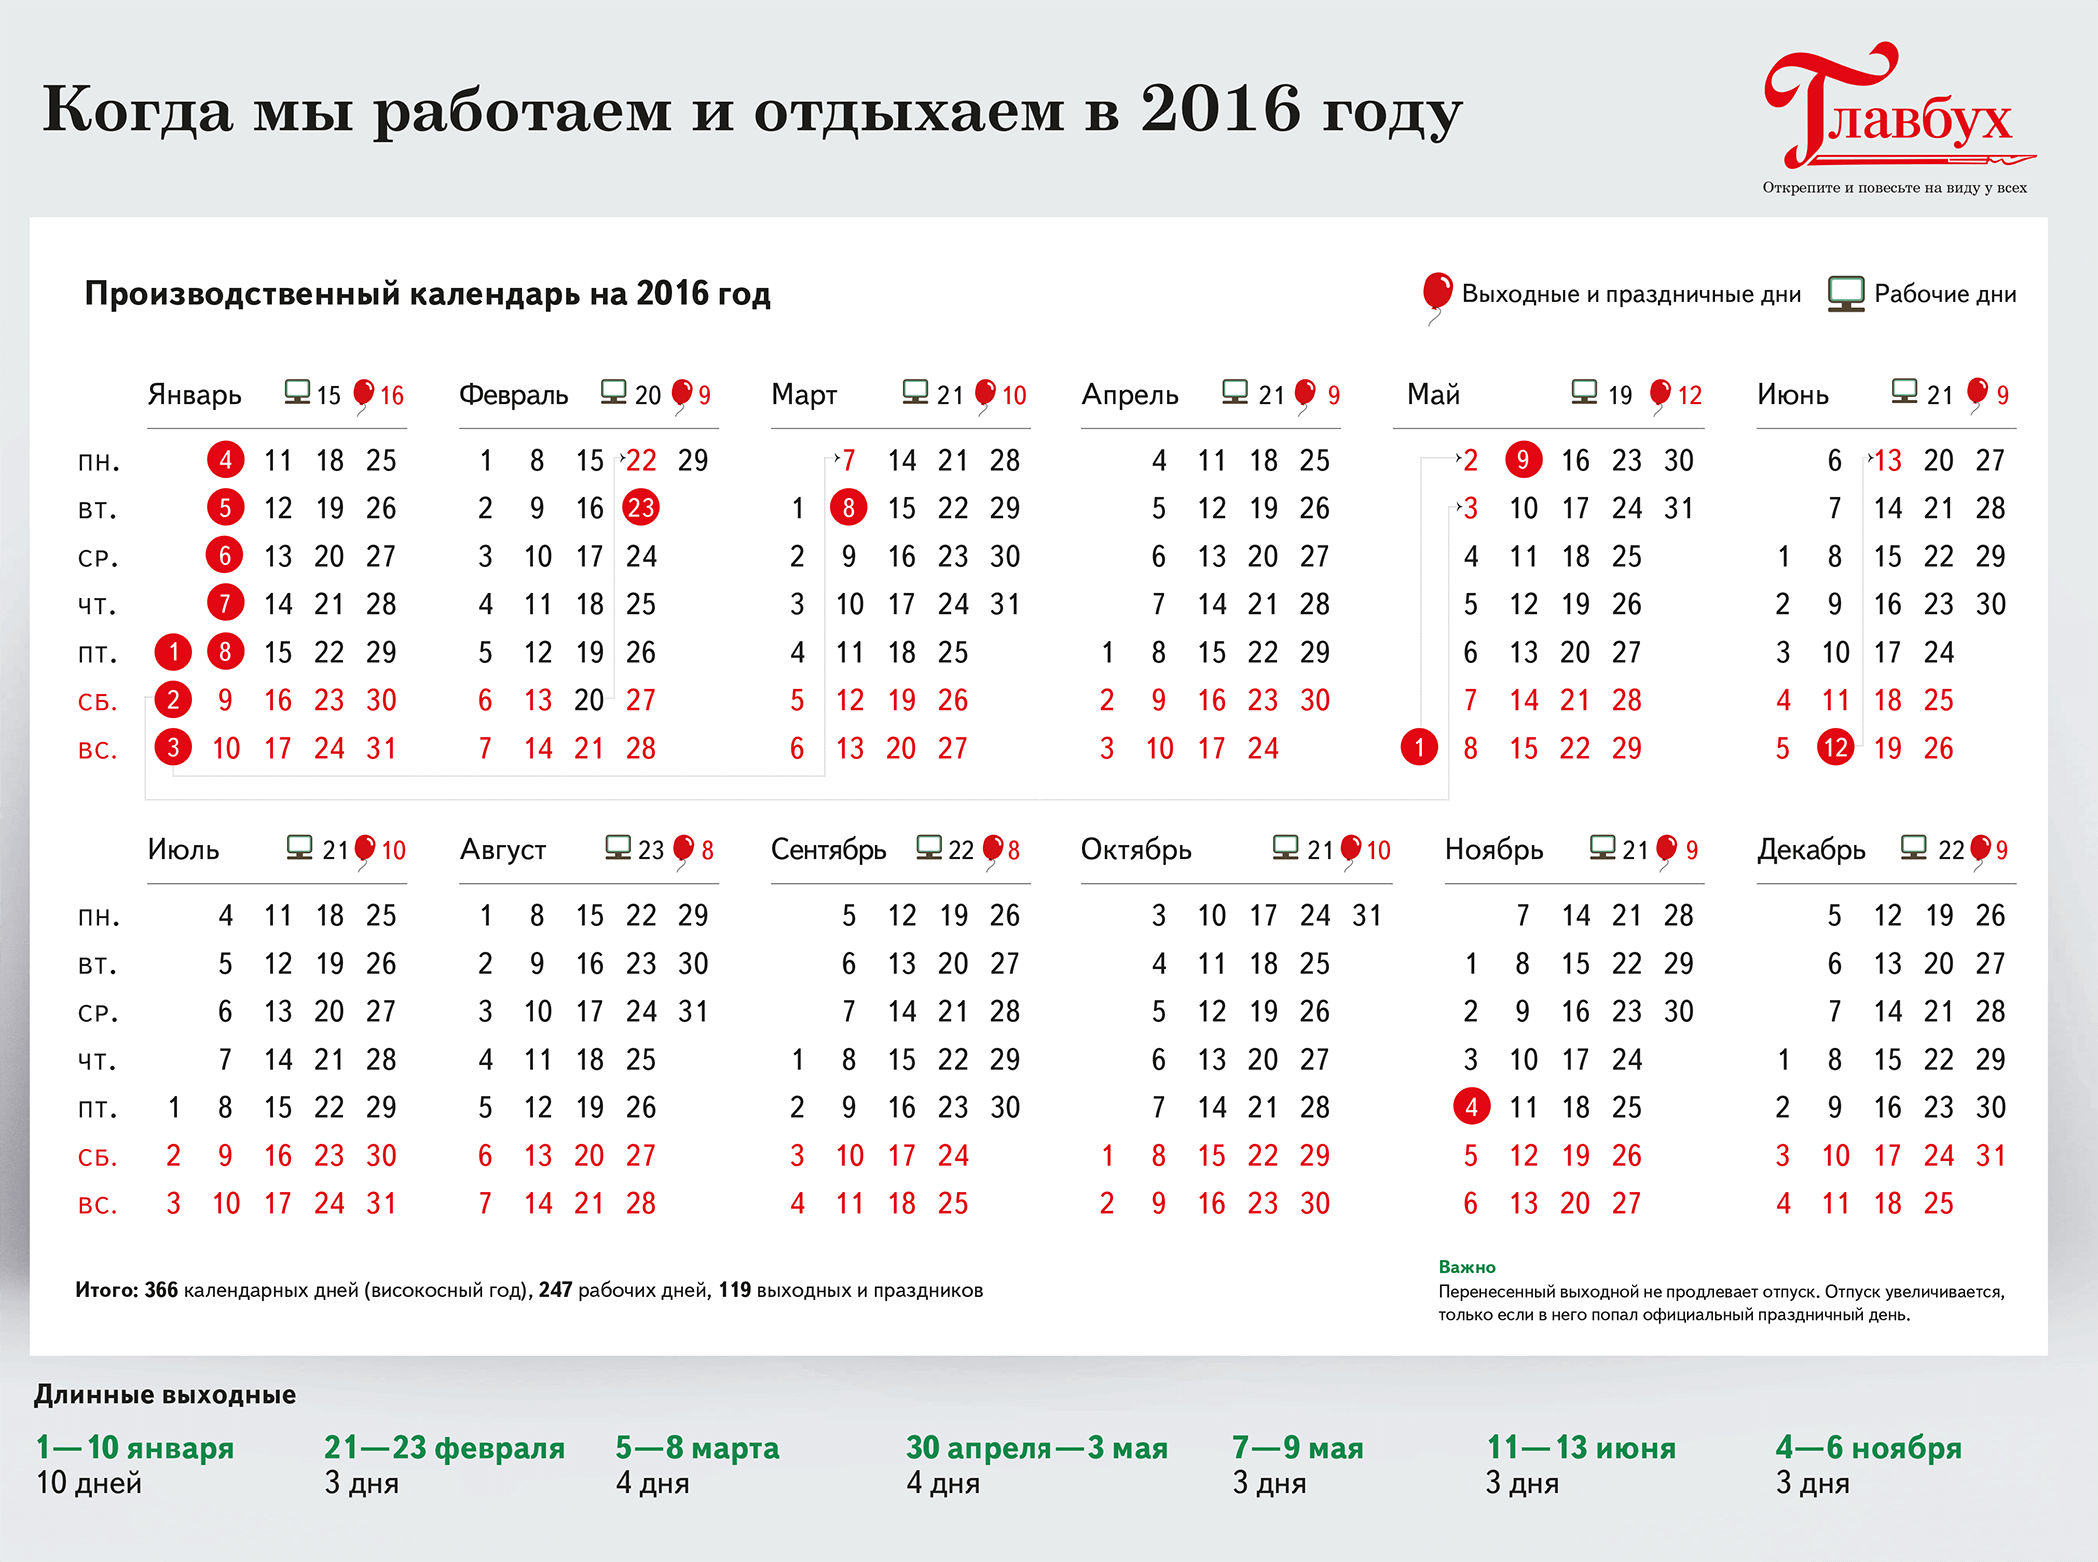 Праздничные рабочие дни. Календарь праздников. Календарь праздников 2016. Выходные и праздничные дни в 2016 году. 1 мая 2016 г